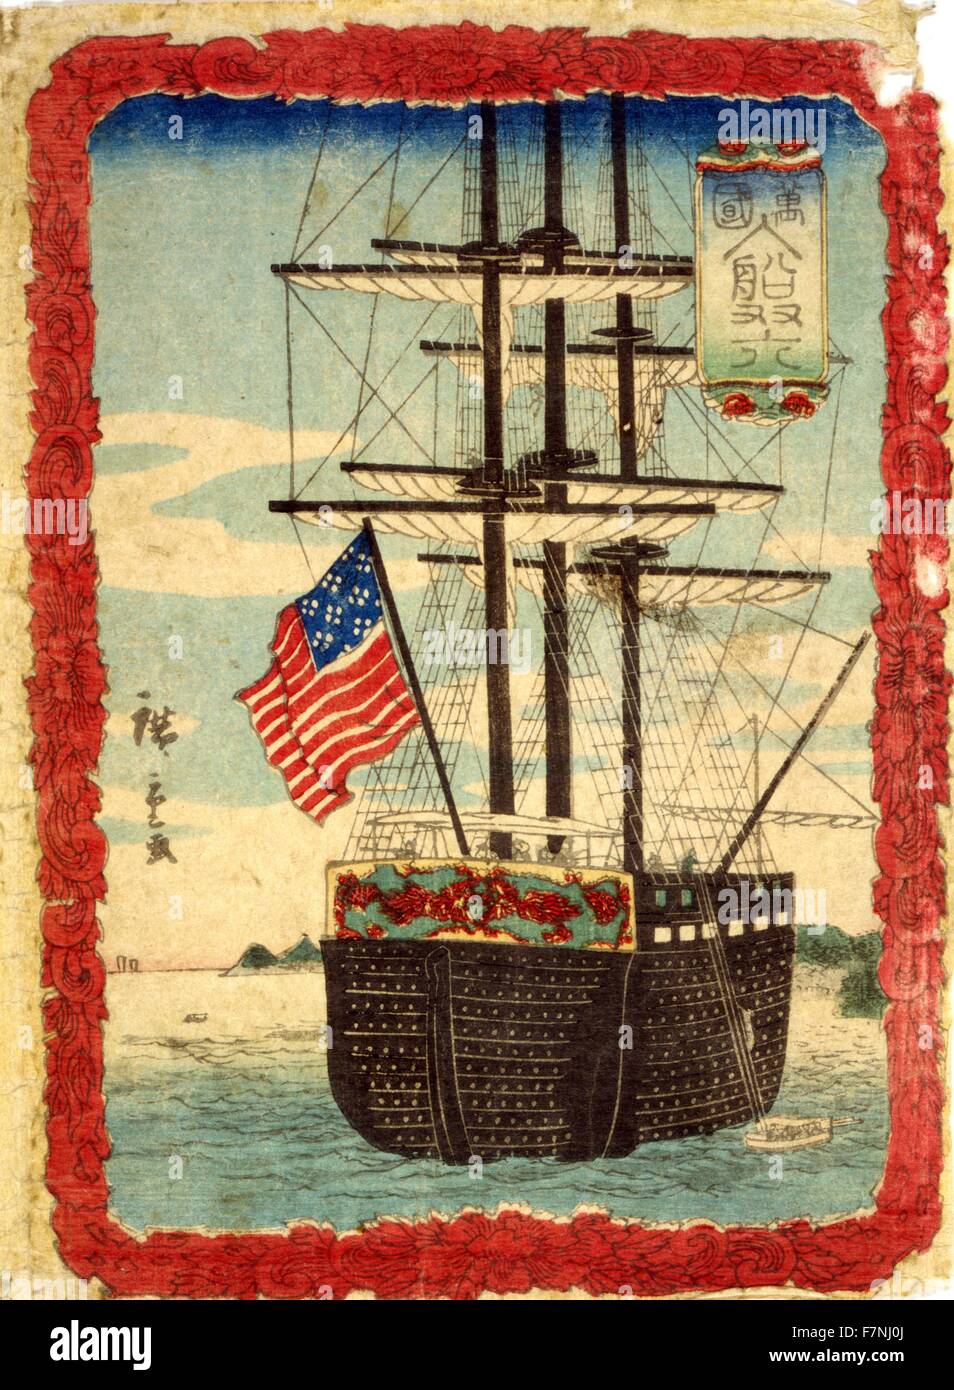 Ausländische Schiffe, port 1860 von Hiroshige Utagawa 1826?-1869, japanische Künstler. Holzschnitt zeigt segelndes Schiff mit einer amerikanischen Flagge in einem Hafen; illustrierte Blatt von Sugoroku-Spiel, das ähnlich wie Backgammon. Stockfoto